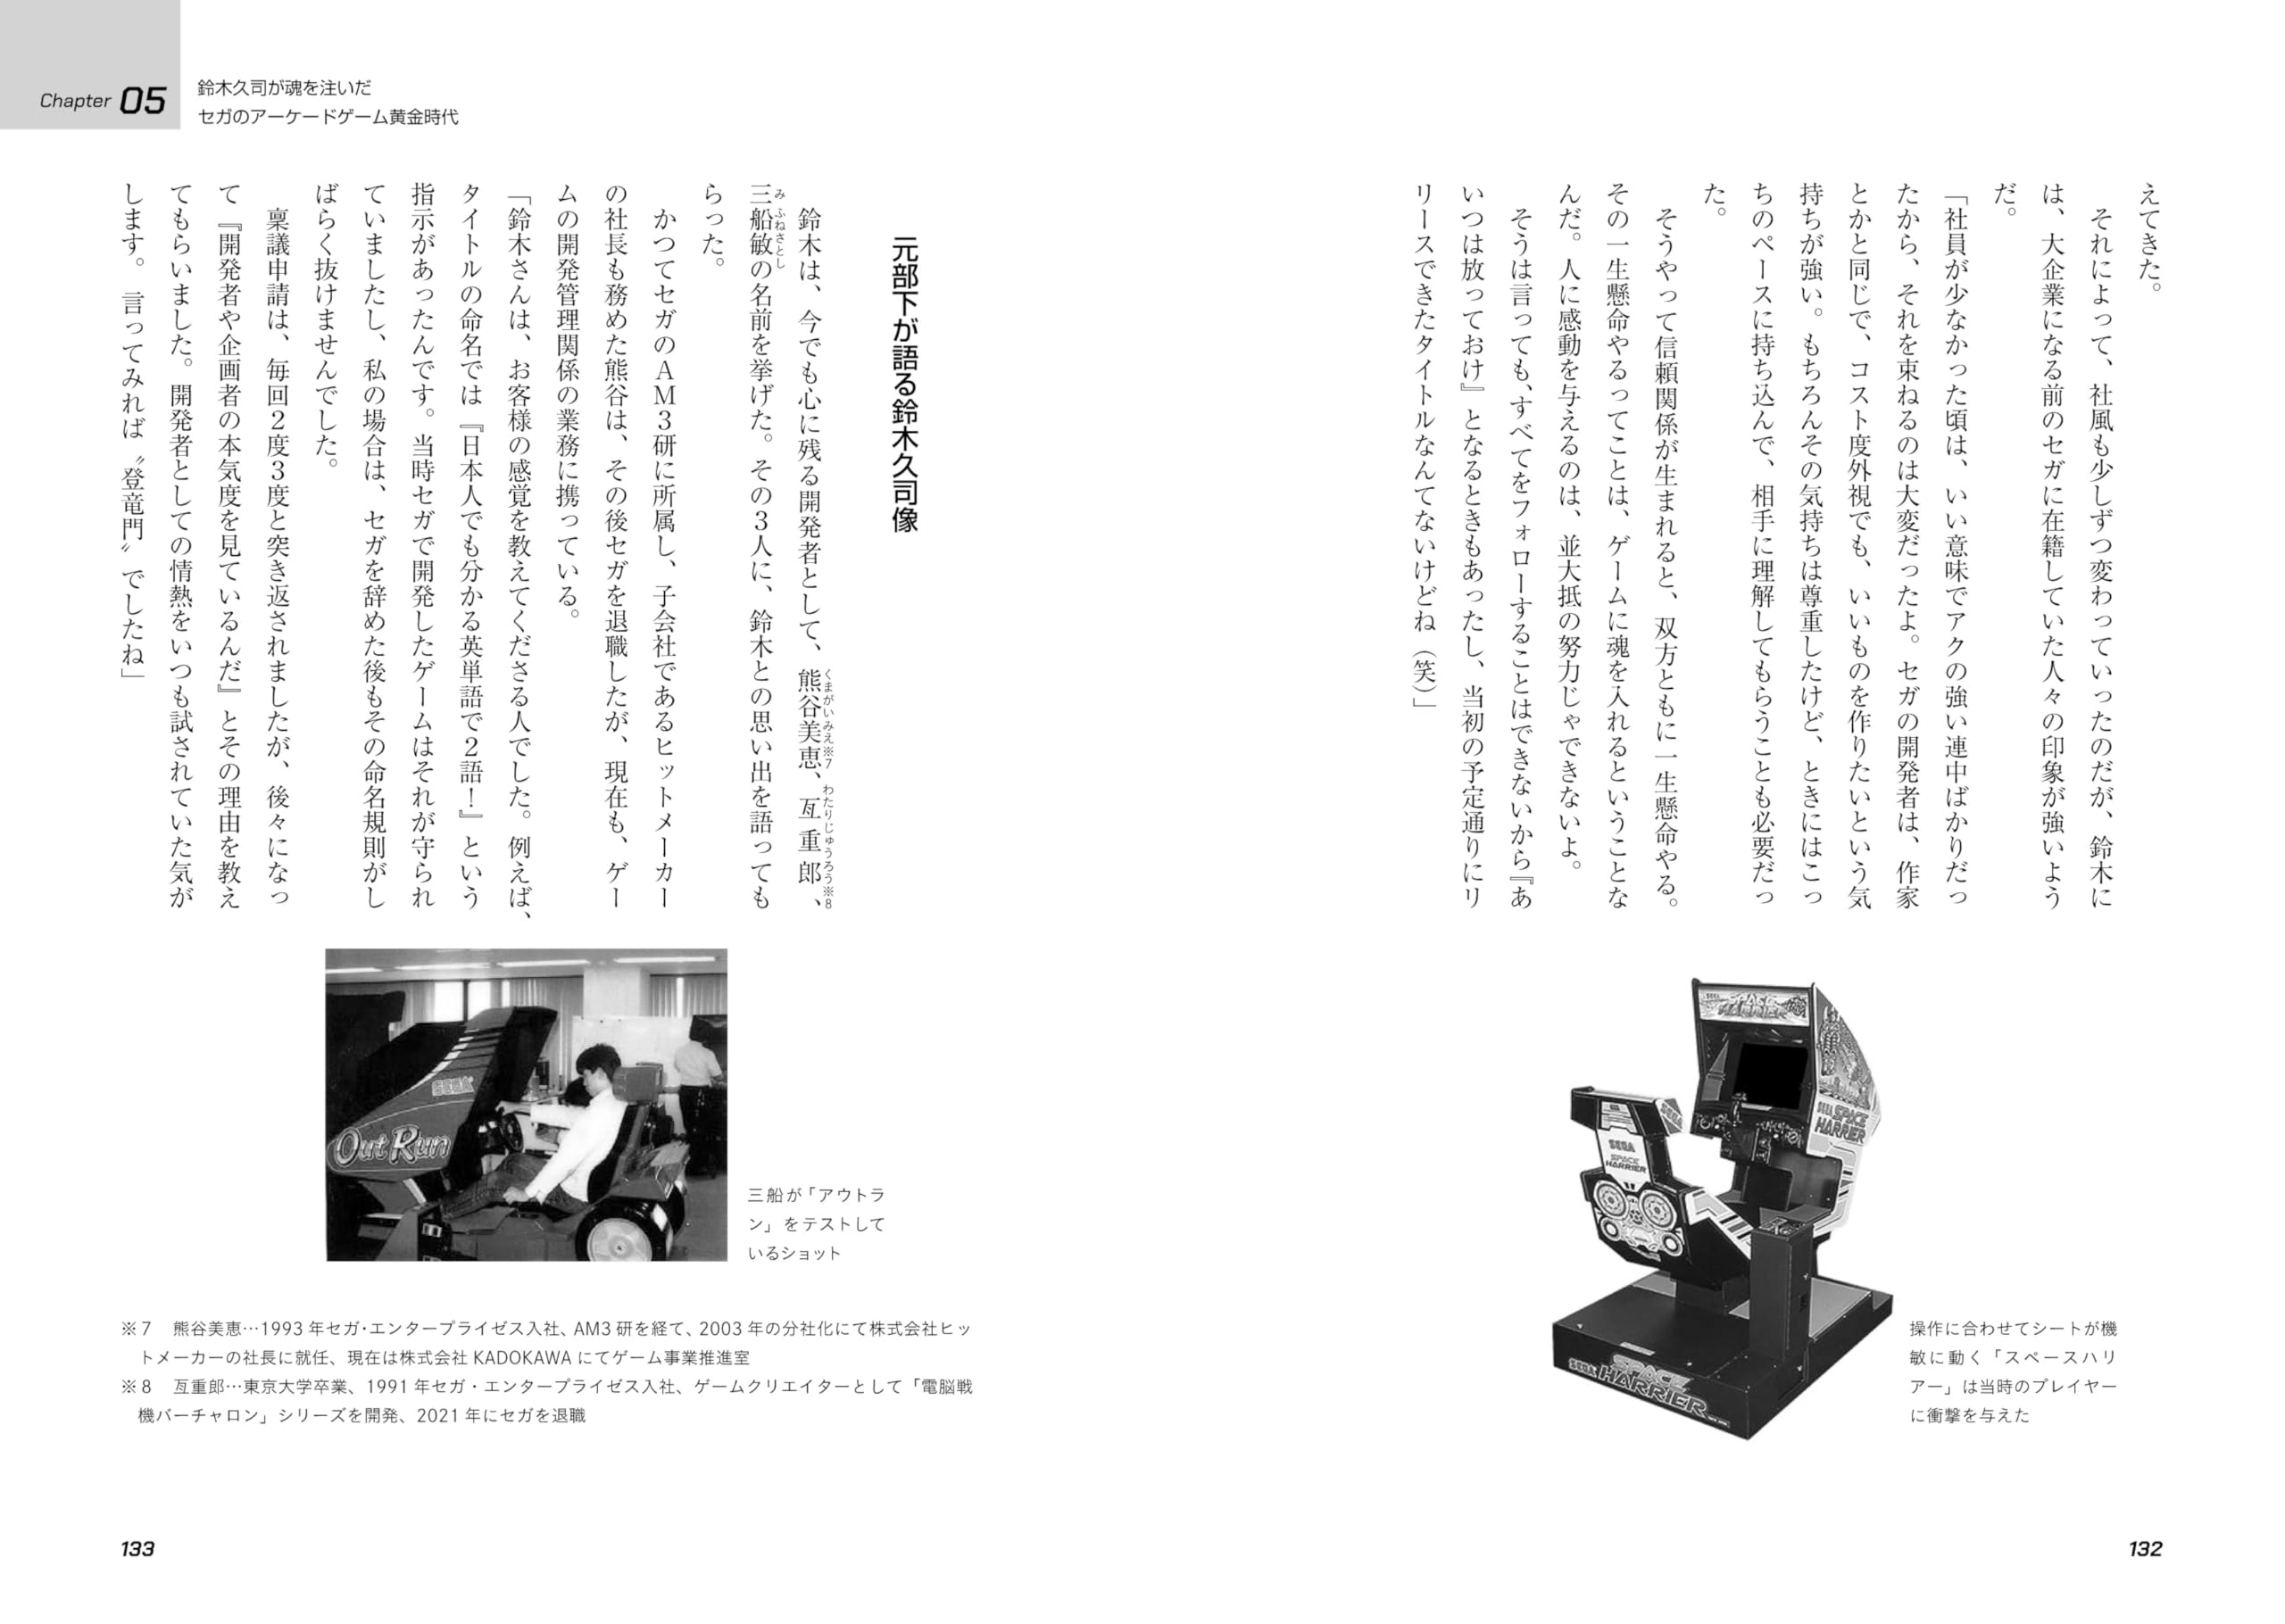 ビデオゲームの語り部たち 日本のゲーム産業を支えたクリエイターの創造と挑戦